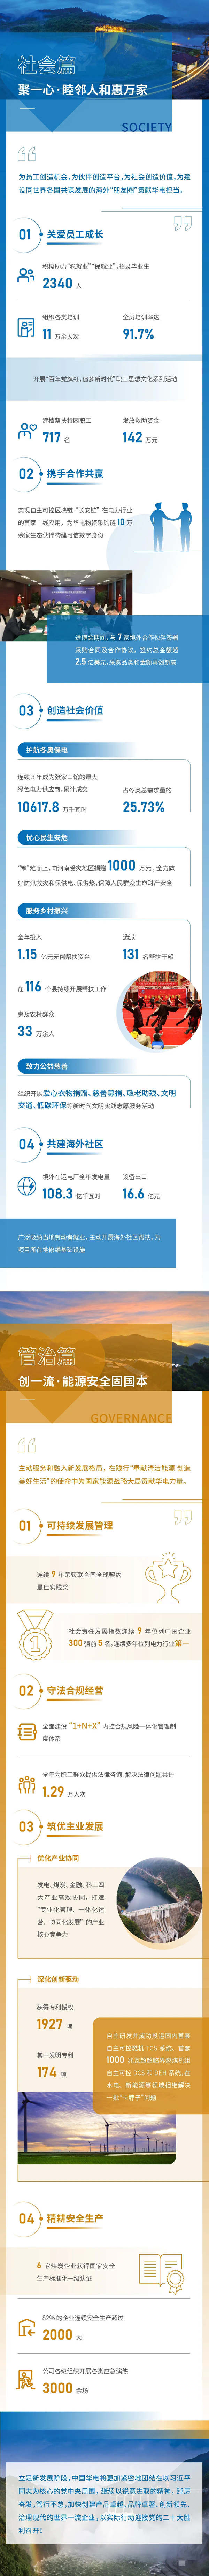 中国华正规买球app电发布2021年可持续发展报告